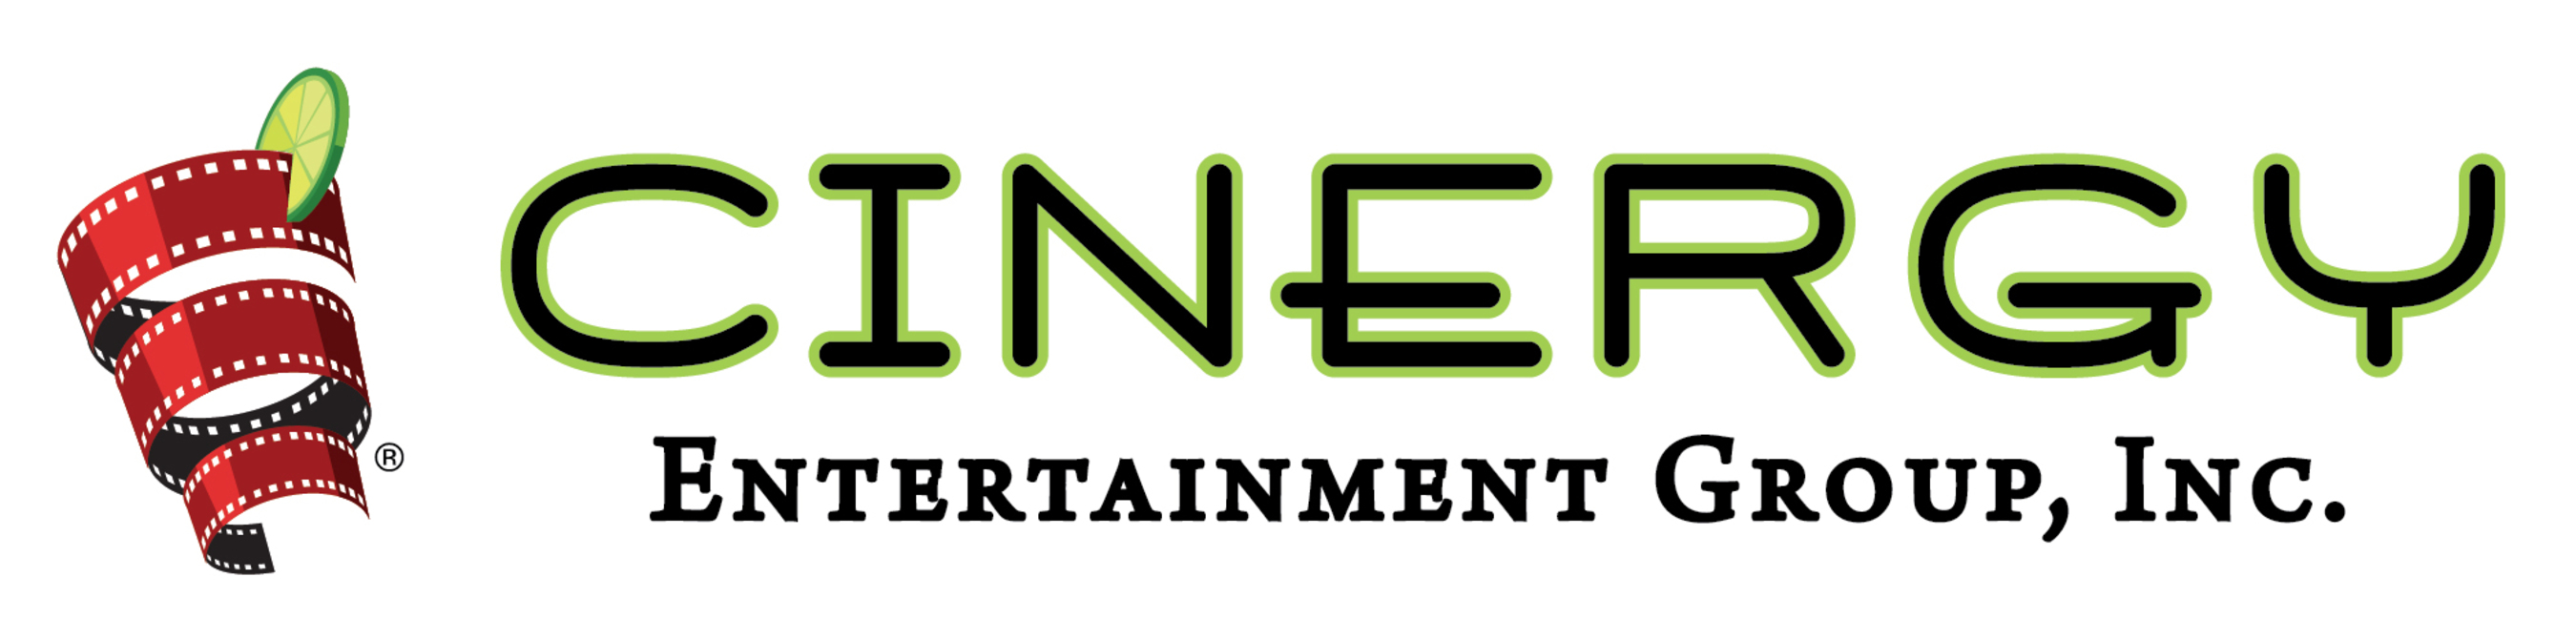 Cinergy Entertainment Group, Inc.